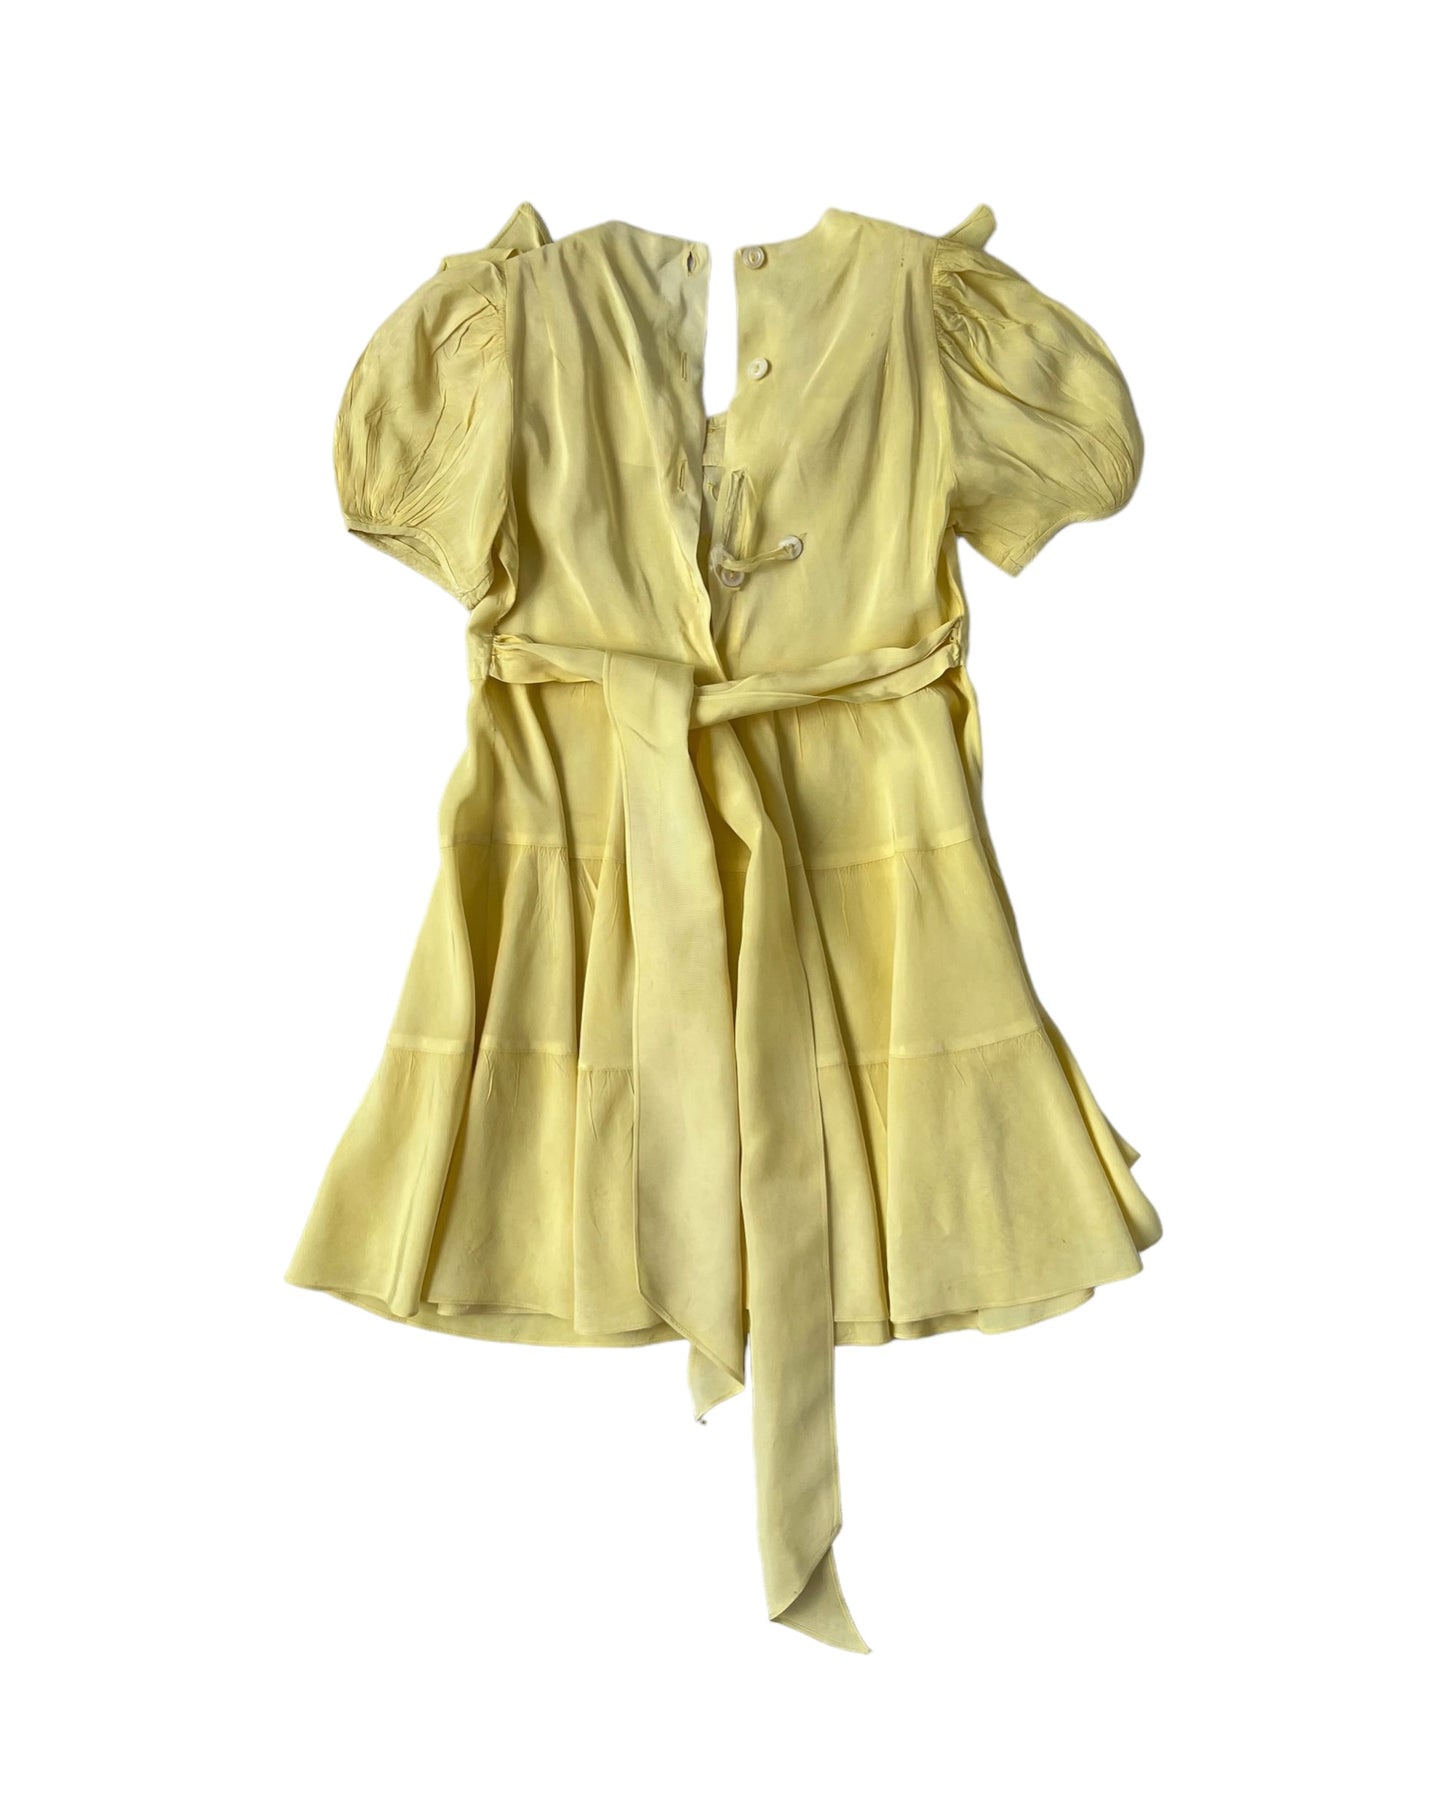 1960s Children's Prairie Buttercup Dress*